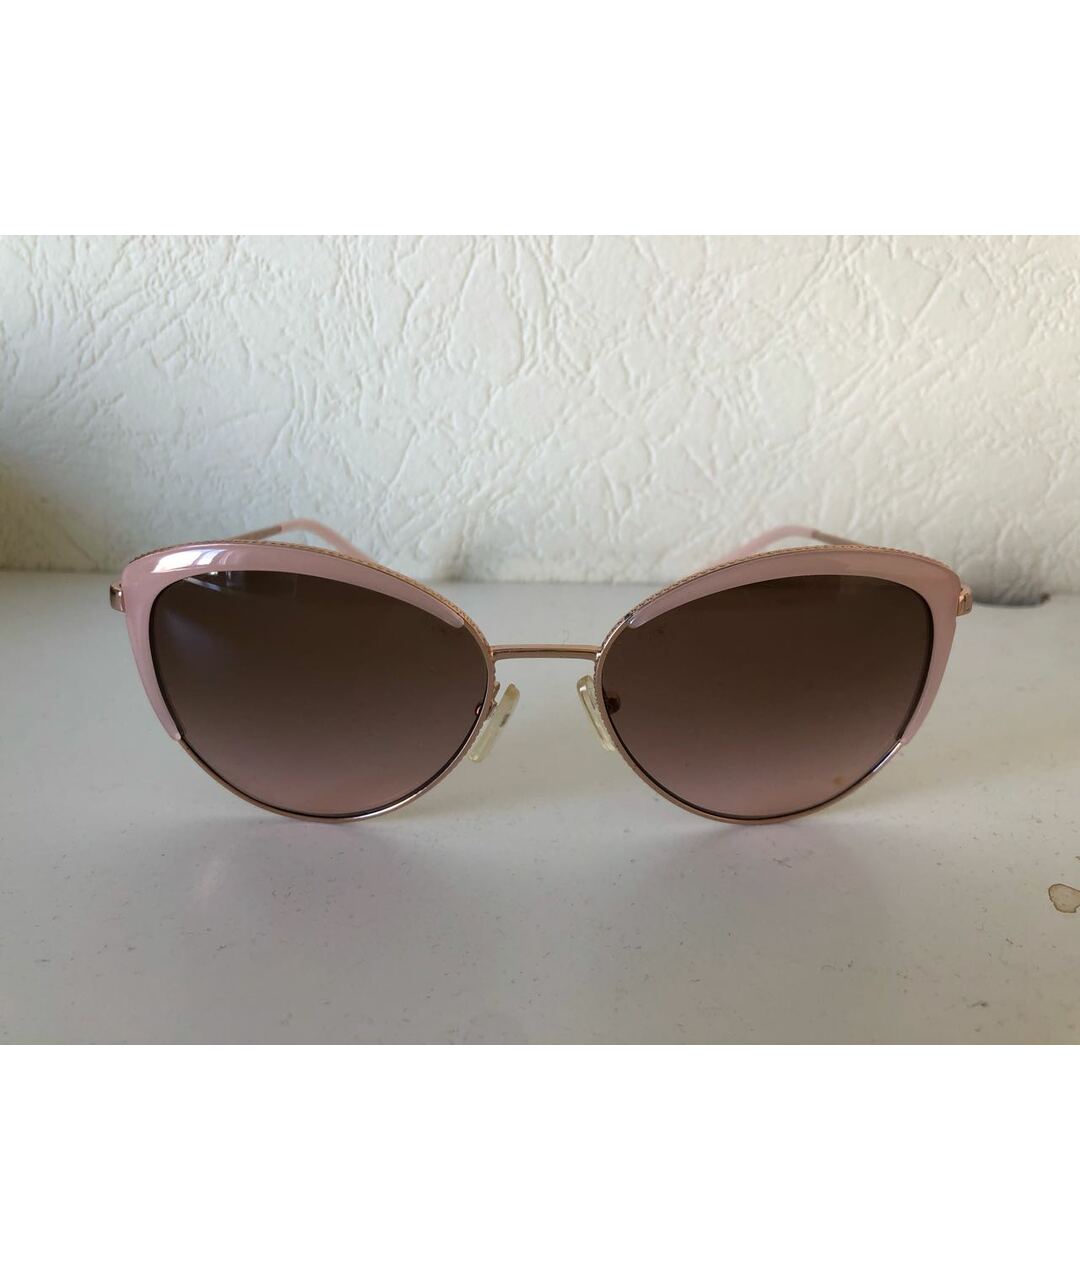 MICHAEL KORS Розовые металлические солнцезащитные очки, фото 5